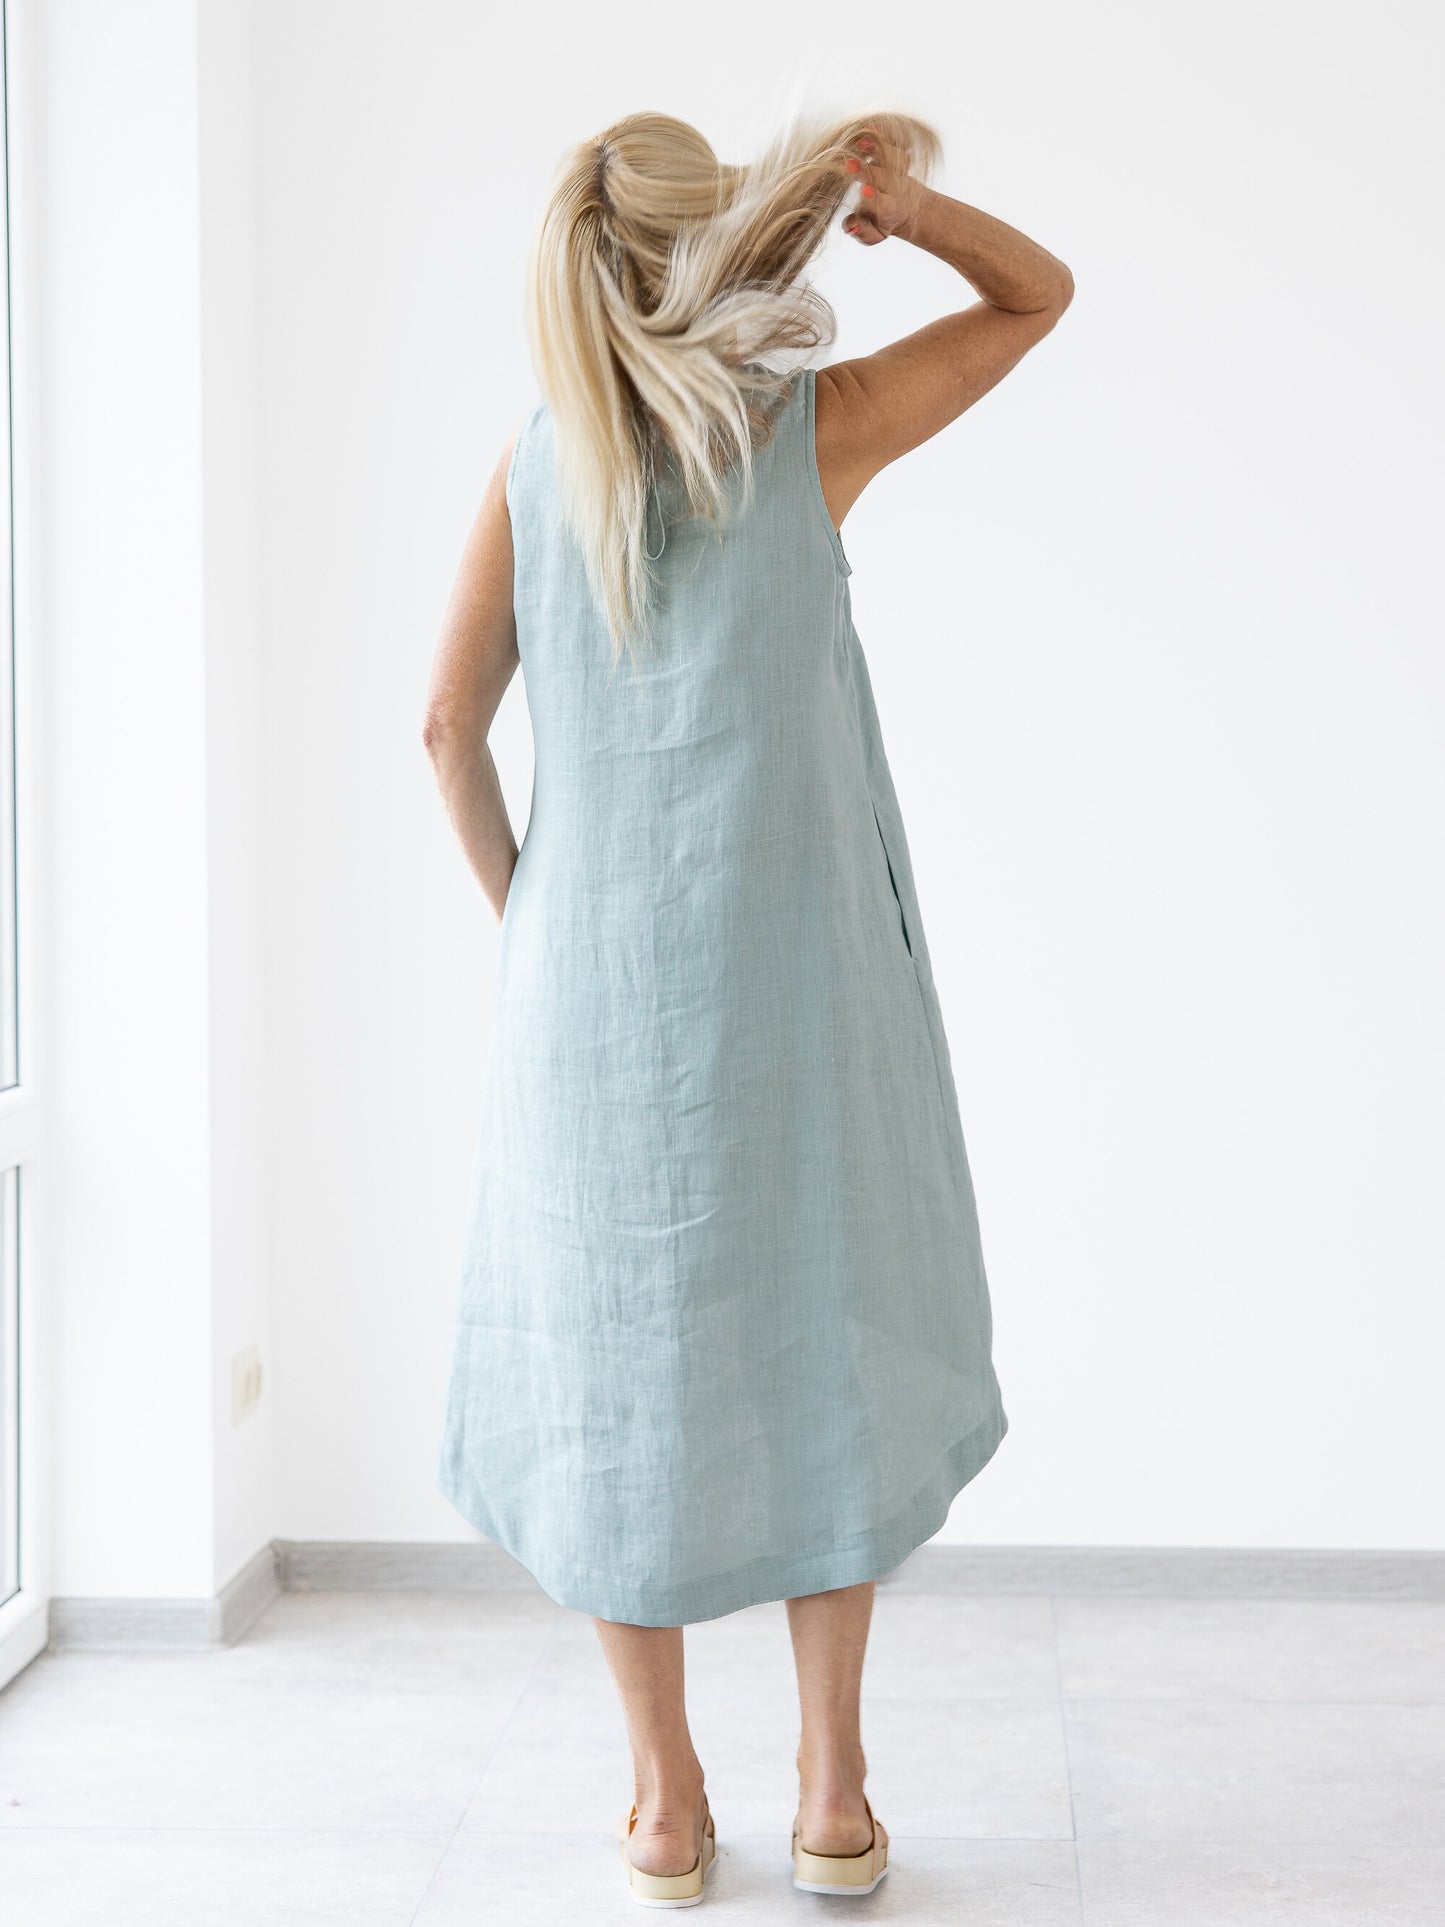 Linen Dress With Pockets  High quality linen summer dresses